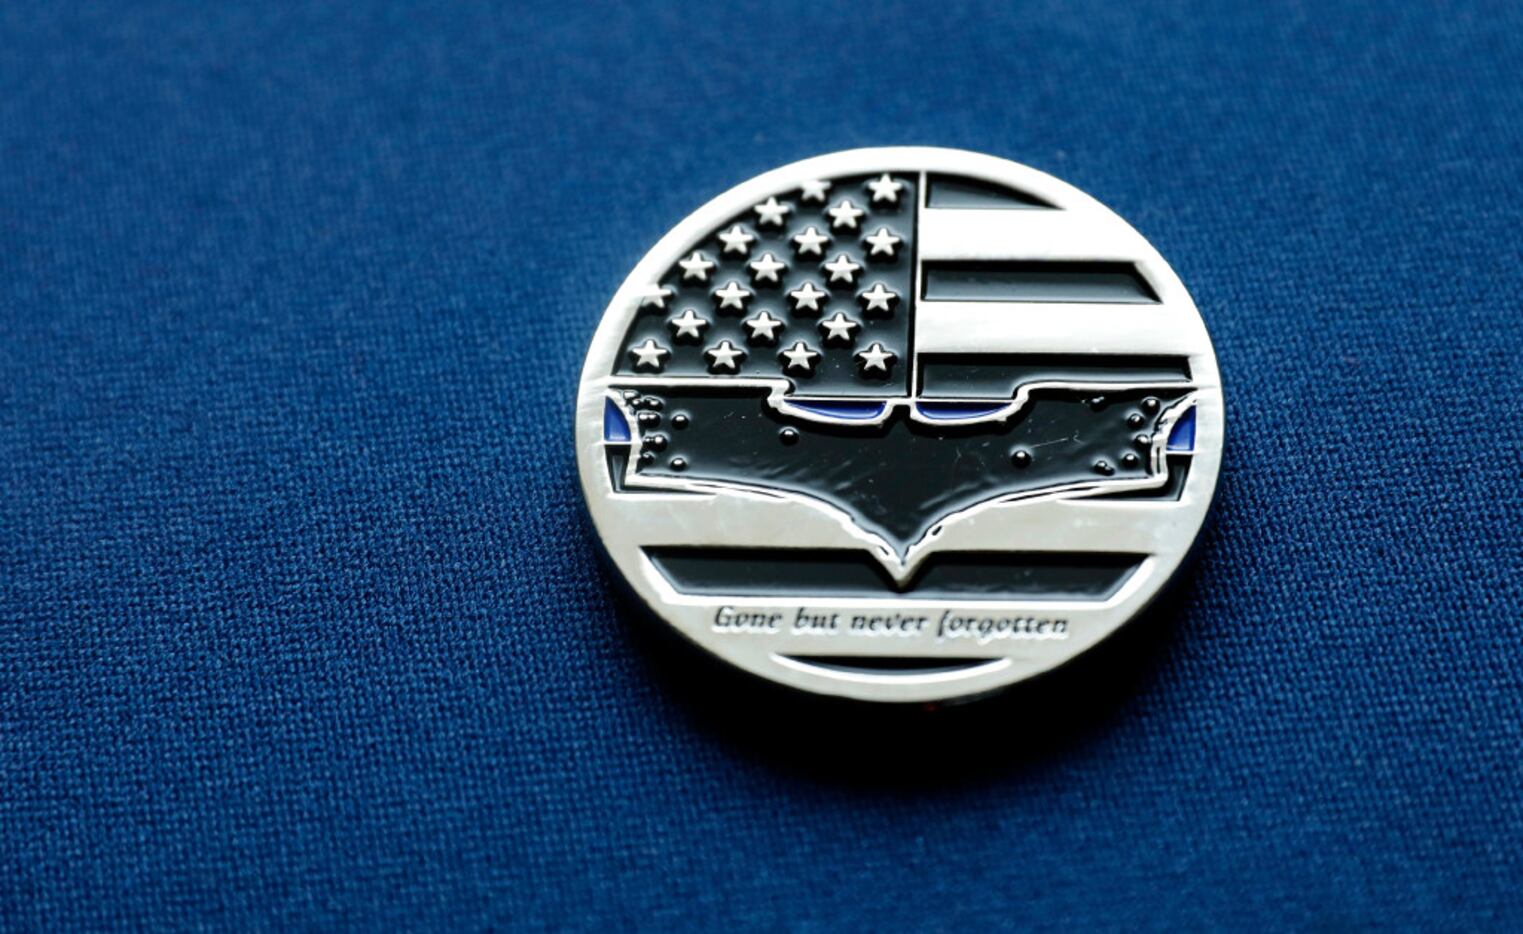 DART Officer Joseph Kyser carries a challenge medal depicting the Batman logo after fallen...